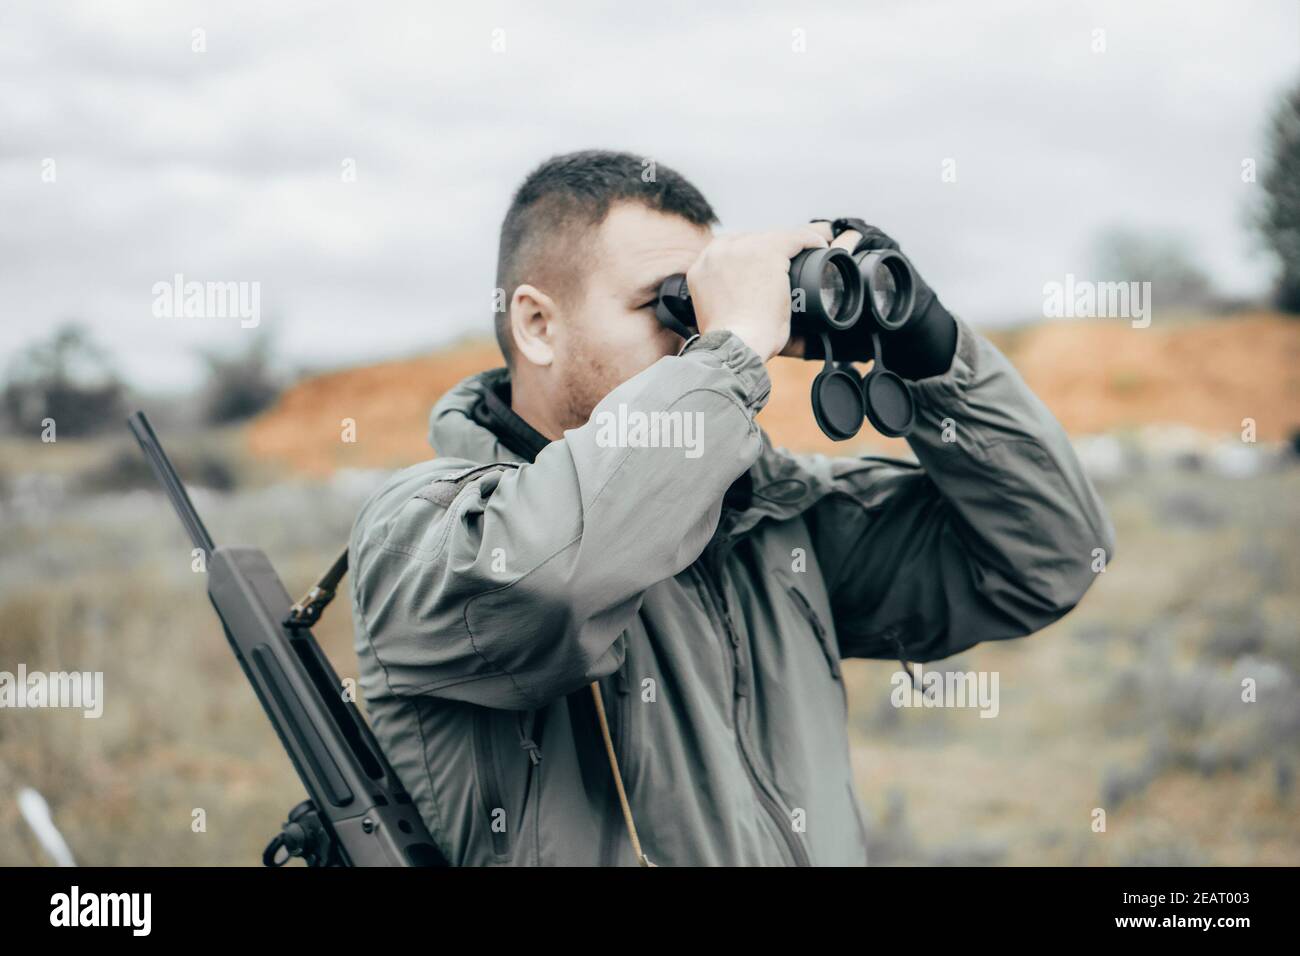 Mann mit einem Gewehr, der durch ein Fernglas schaut. Private militärische  Auftragnehmer oder Jäger Stockfotografie - Alamy